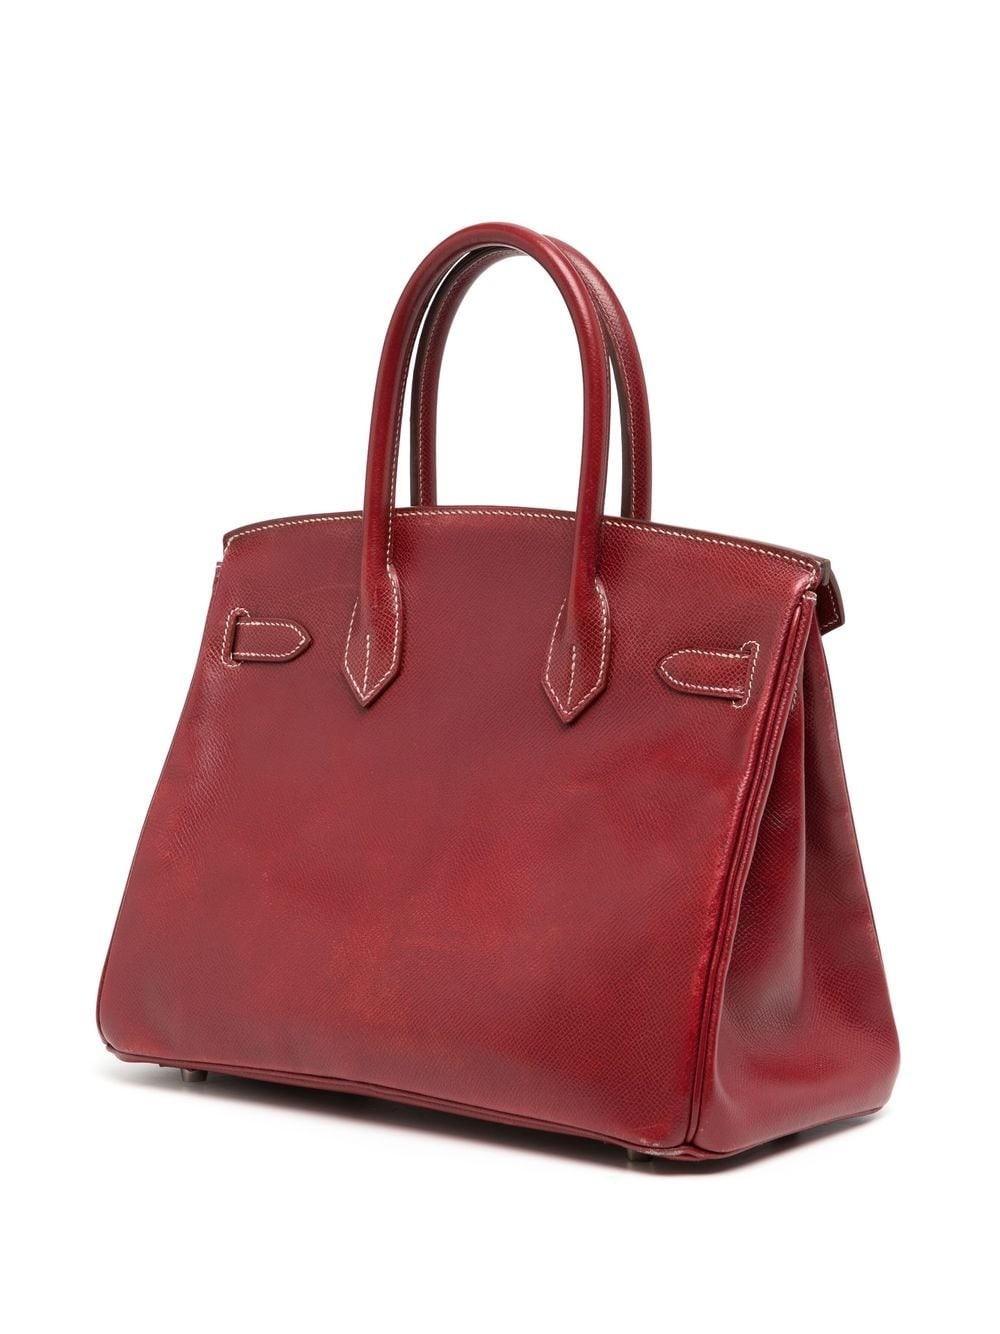 Dans une magnifique couleur rouge bordeaux, le cuir Courchevel apporte l'équilibre parfait entre la brillance et la texture de ce Birkin de 30 cm. Fabriquée en 2001, cette pièce a véritablement conservé sa qualité, mais elle présente une certaine